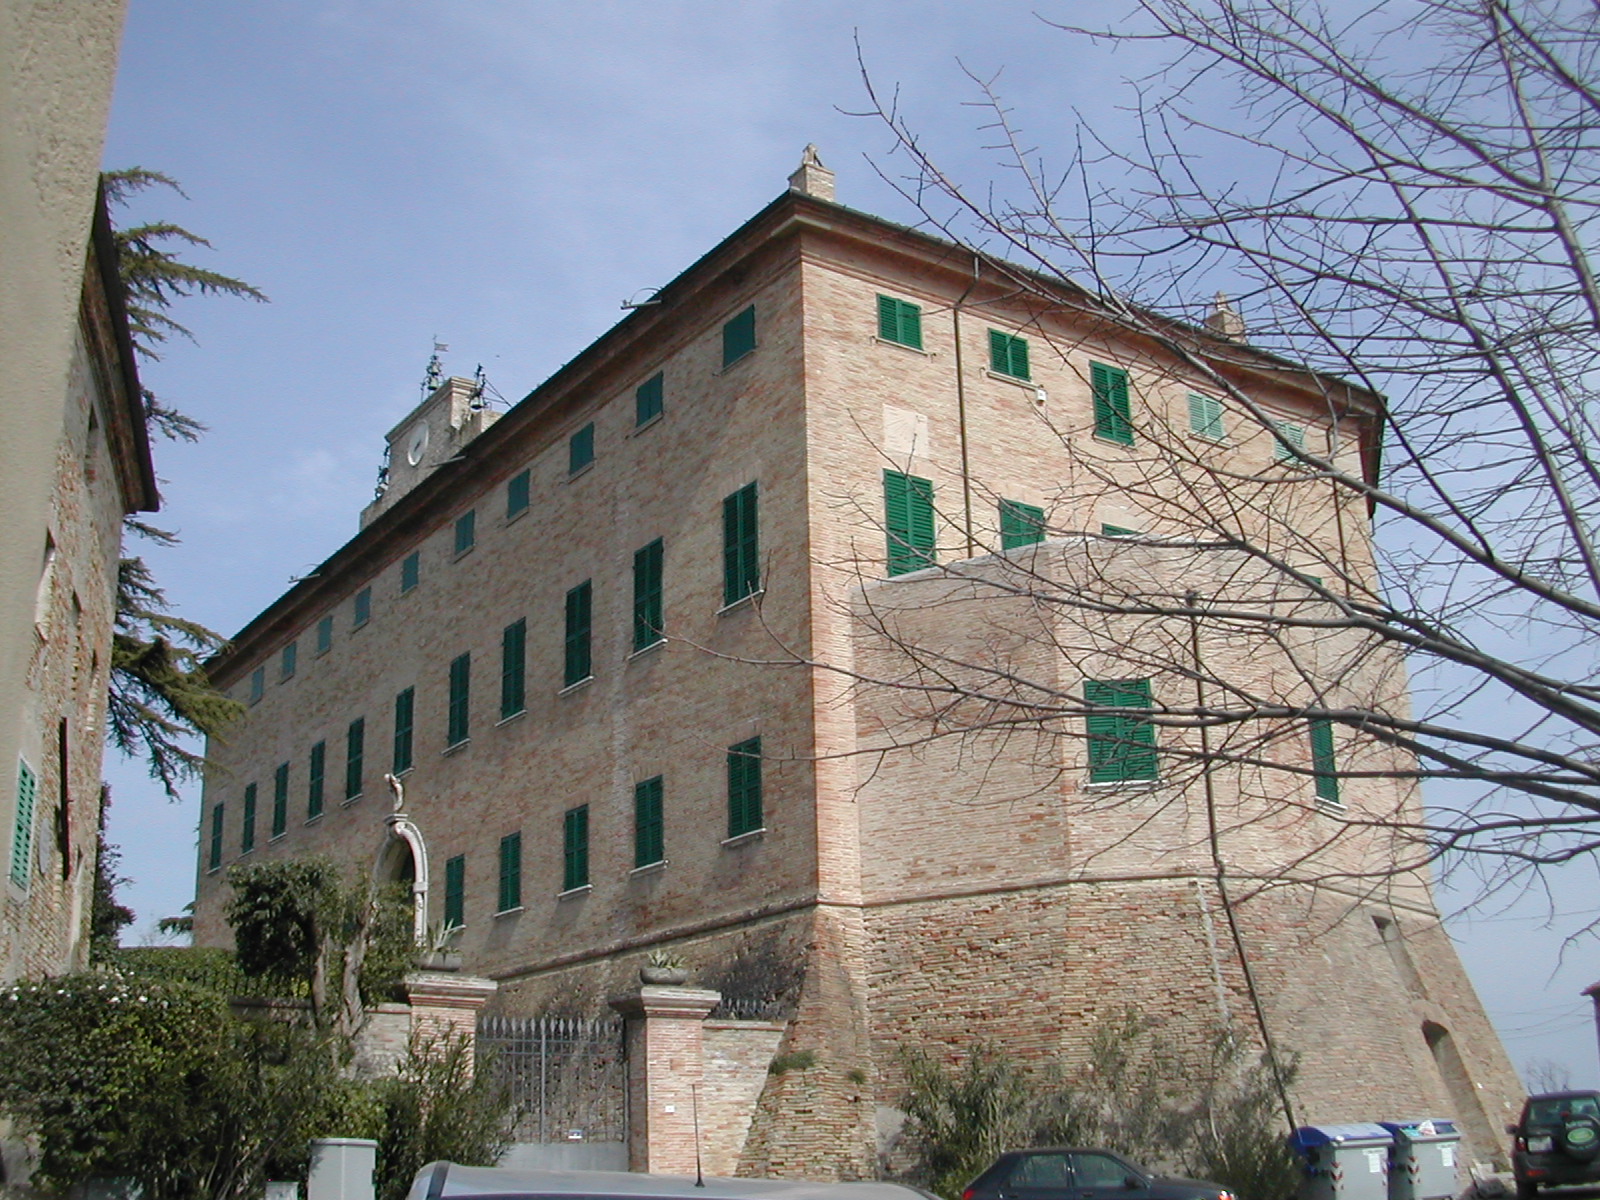 Palazzo castello Cianciarini (palazzo castello, signorile) - Monterado (AN) 